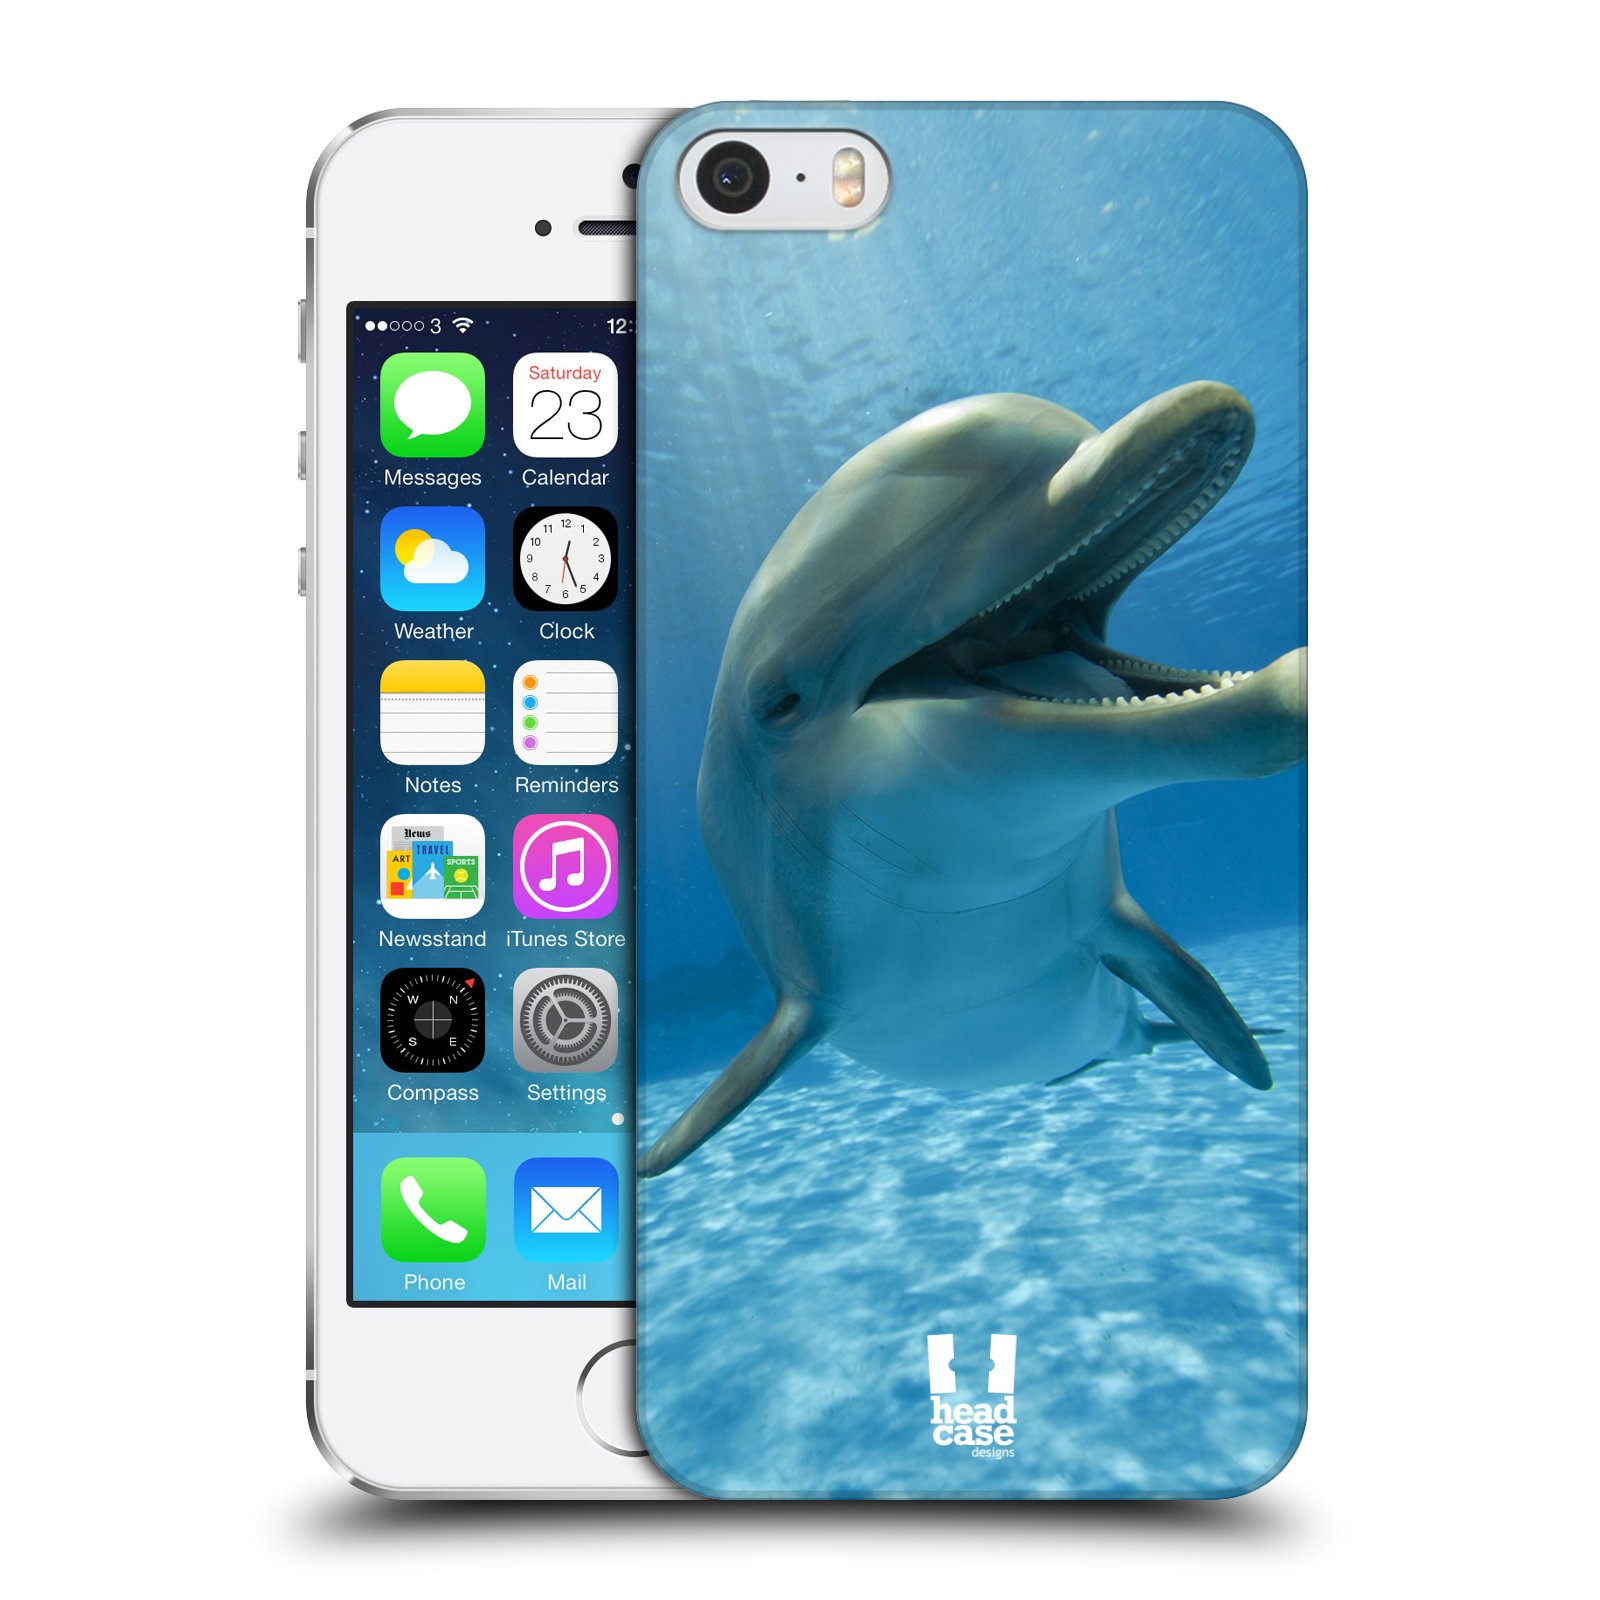 Zadní obal pro mobil Apple Iphone 5/5S/SE 2015 - HEAD CASE - Svět zvířat delfín v moři